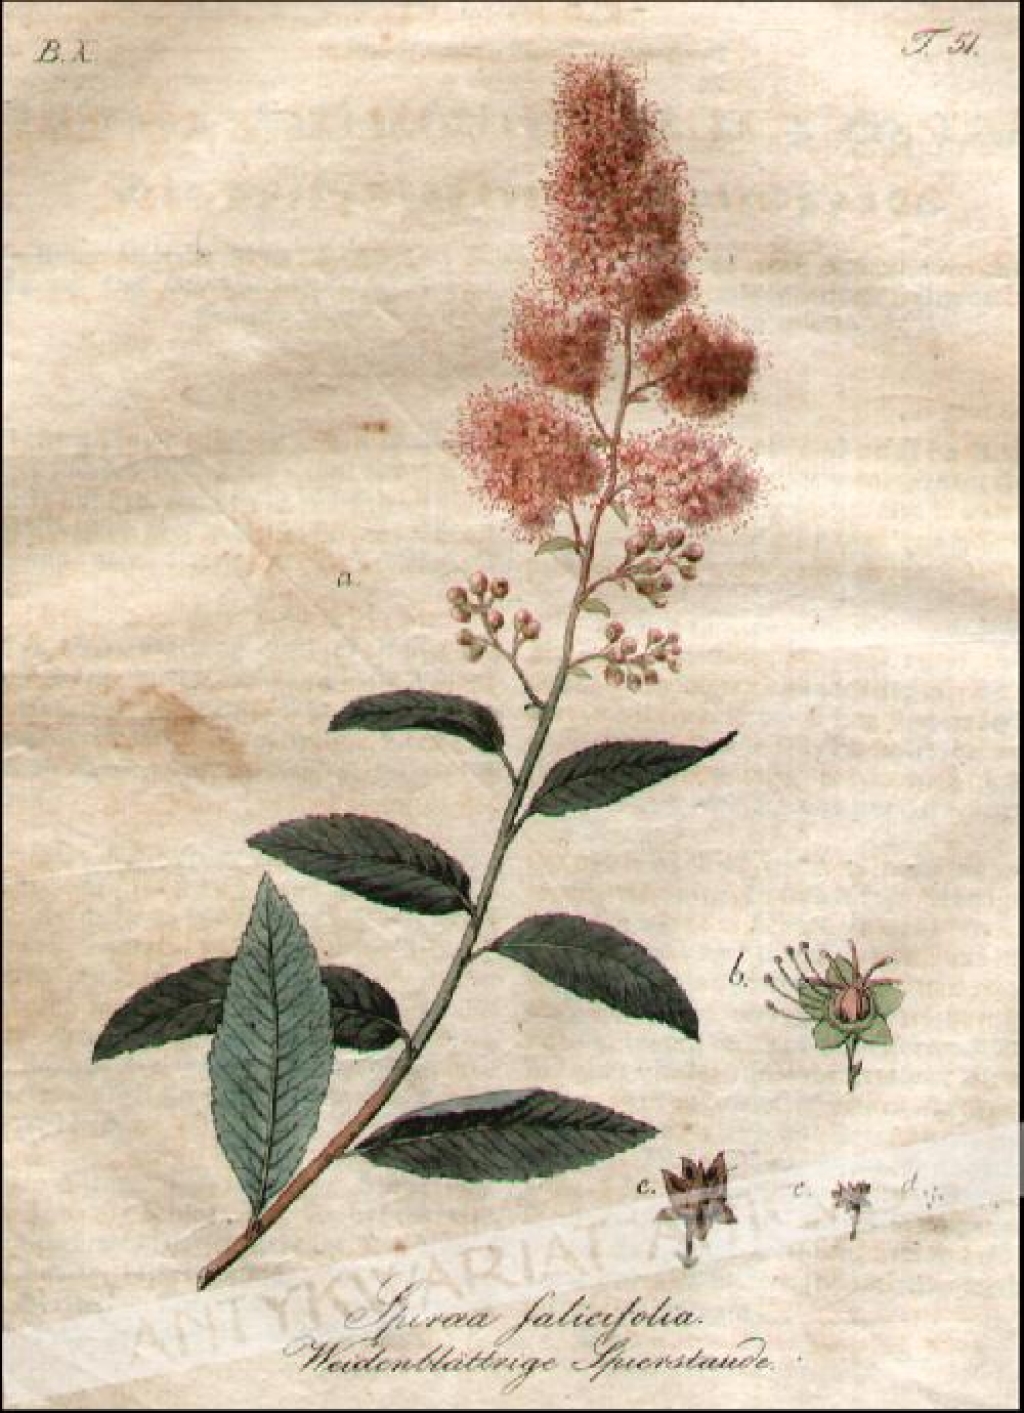 [rycina, 1821] Spiraea Salicifolia. Weidenblattrige Spierstaude [Tawuła wierzbolistna]